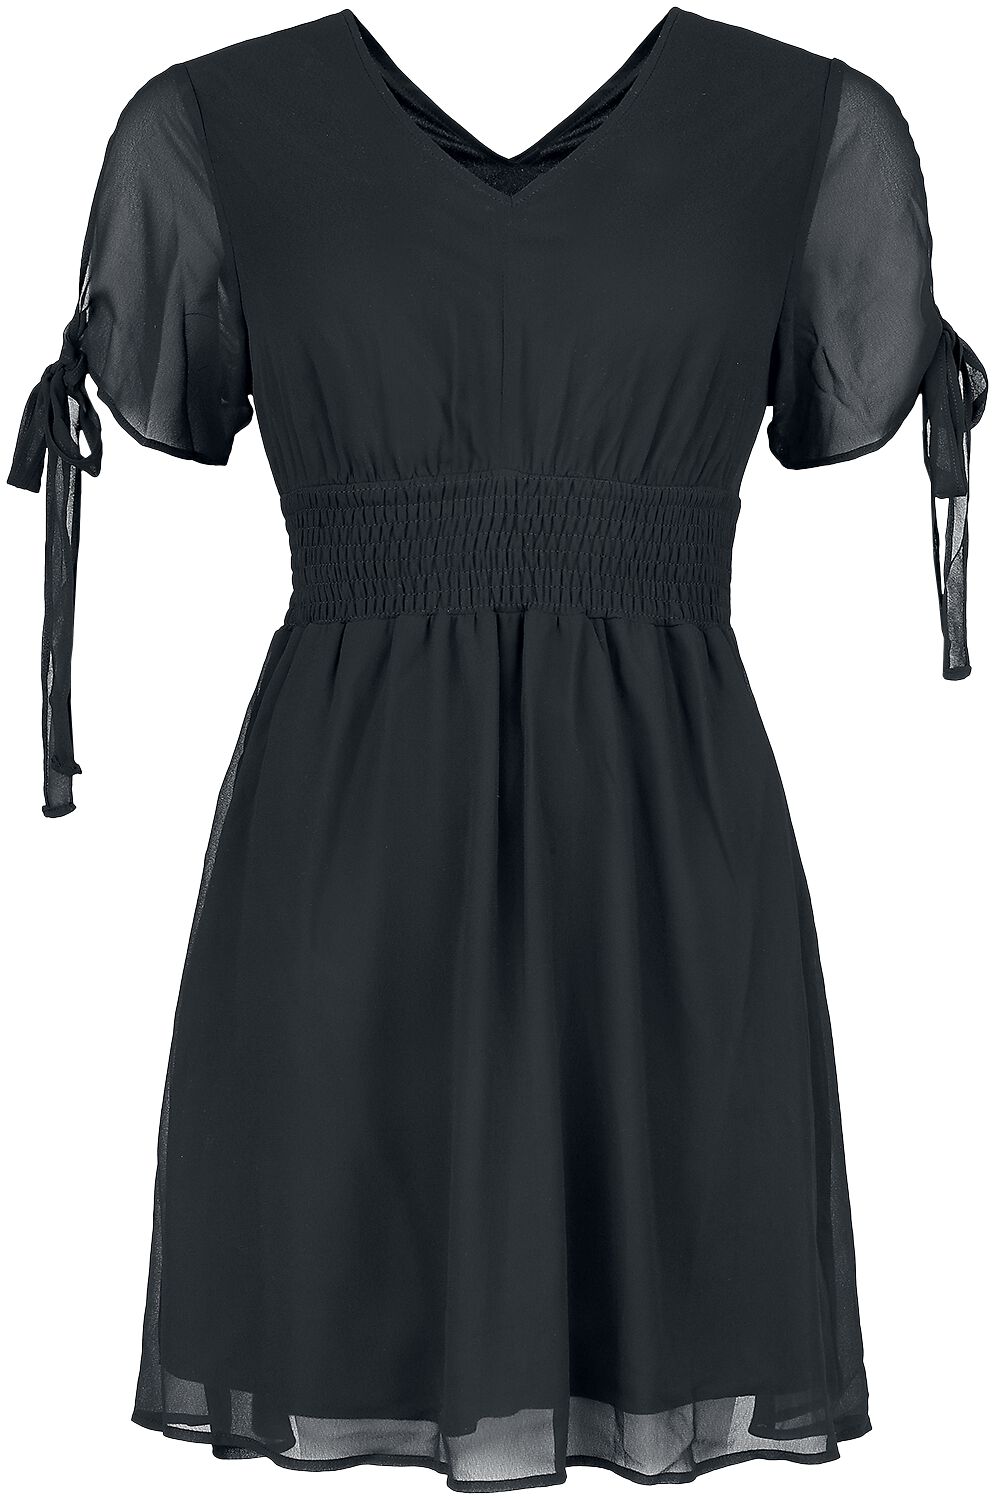 Innocent - Gothic Kurzes Kleid - Carme Dress - S bis 4XL - für Damen - Größe L - schwarz